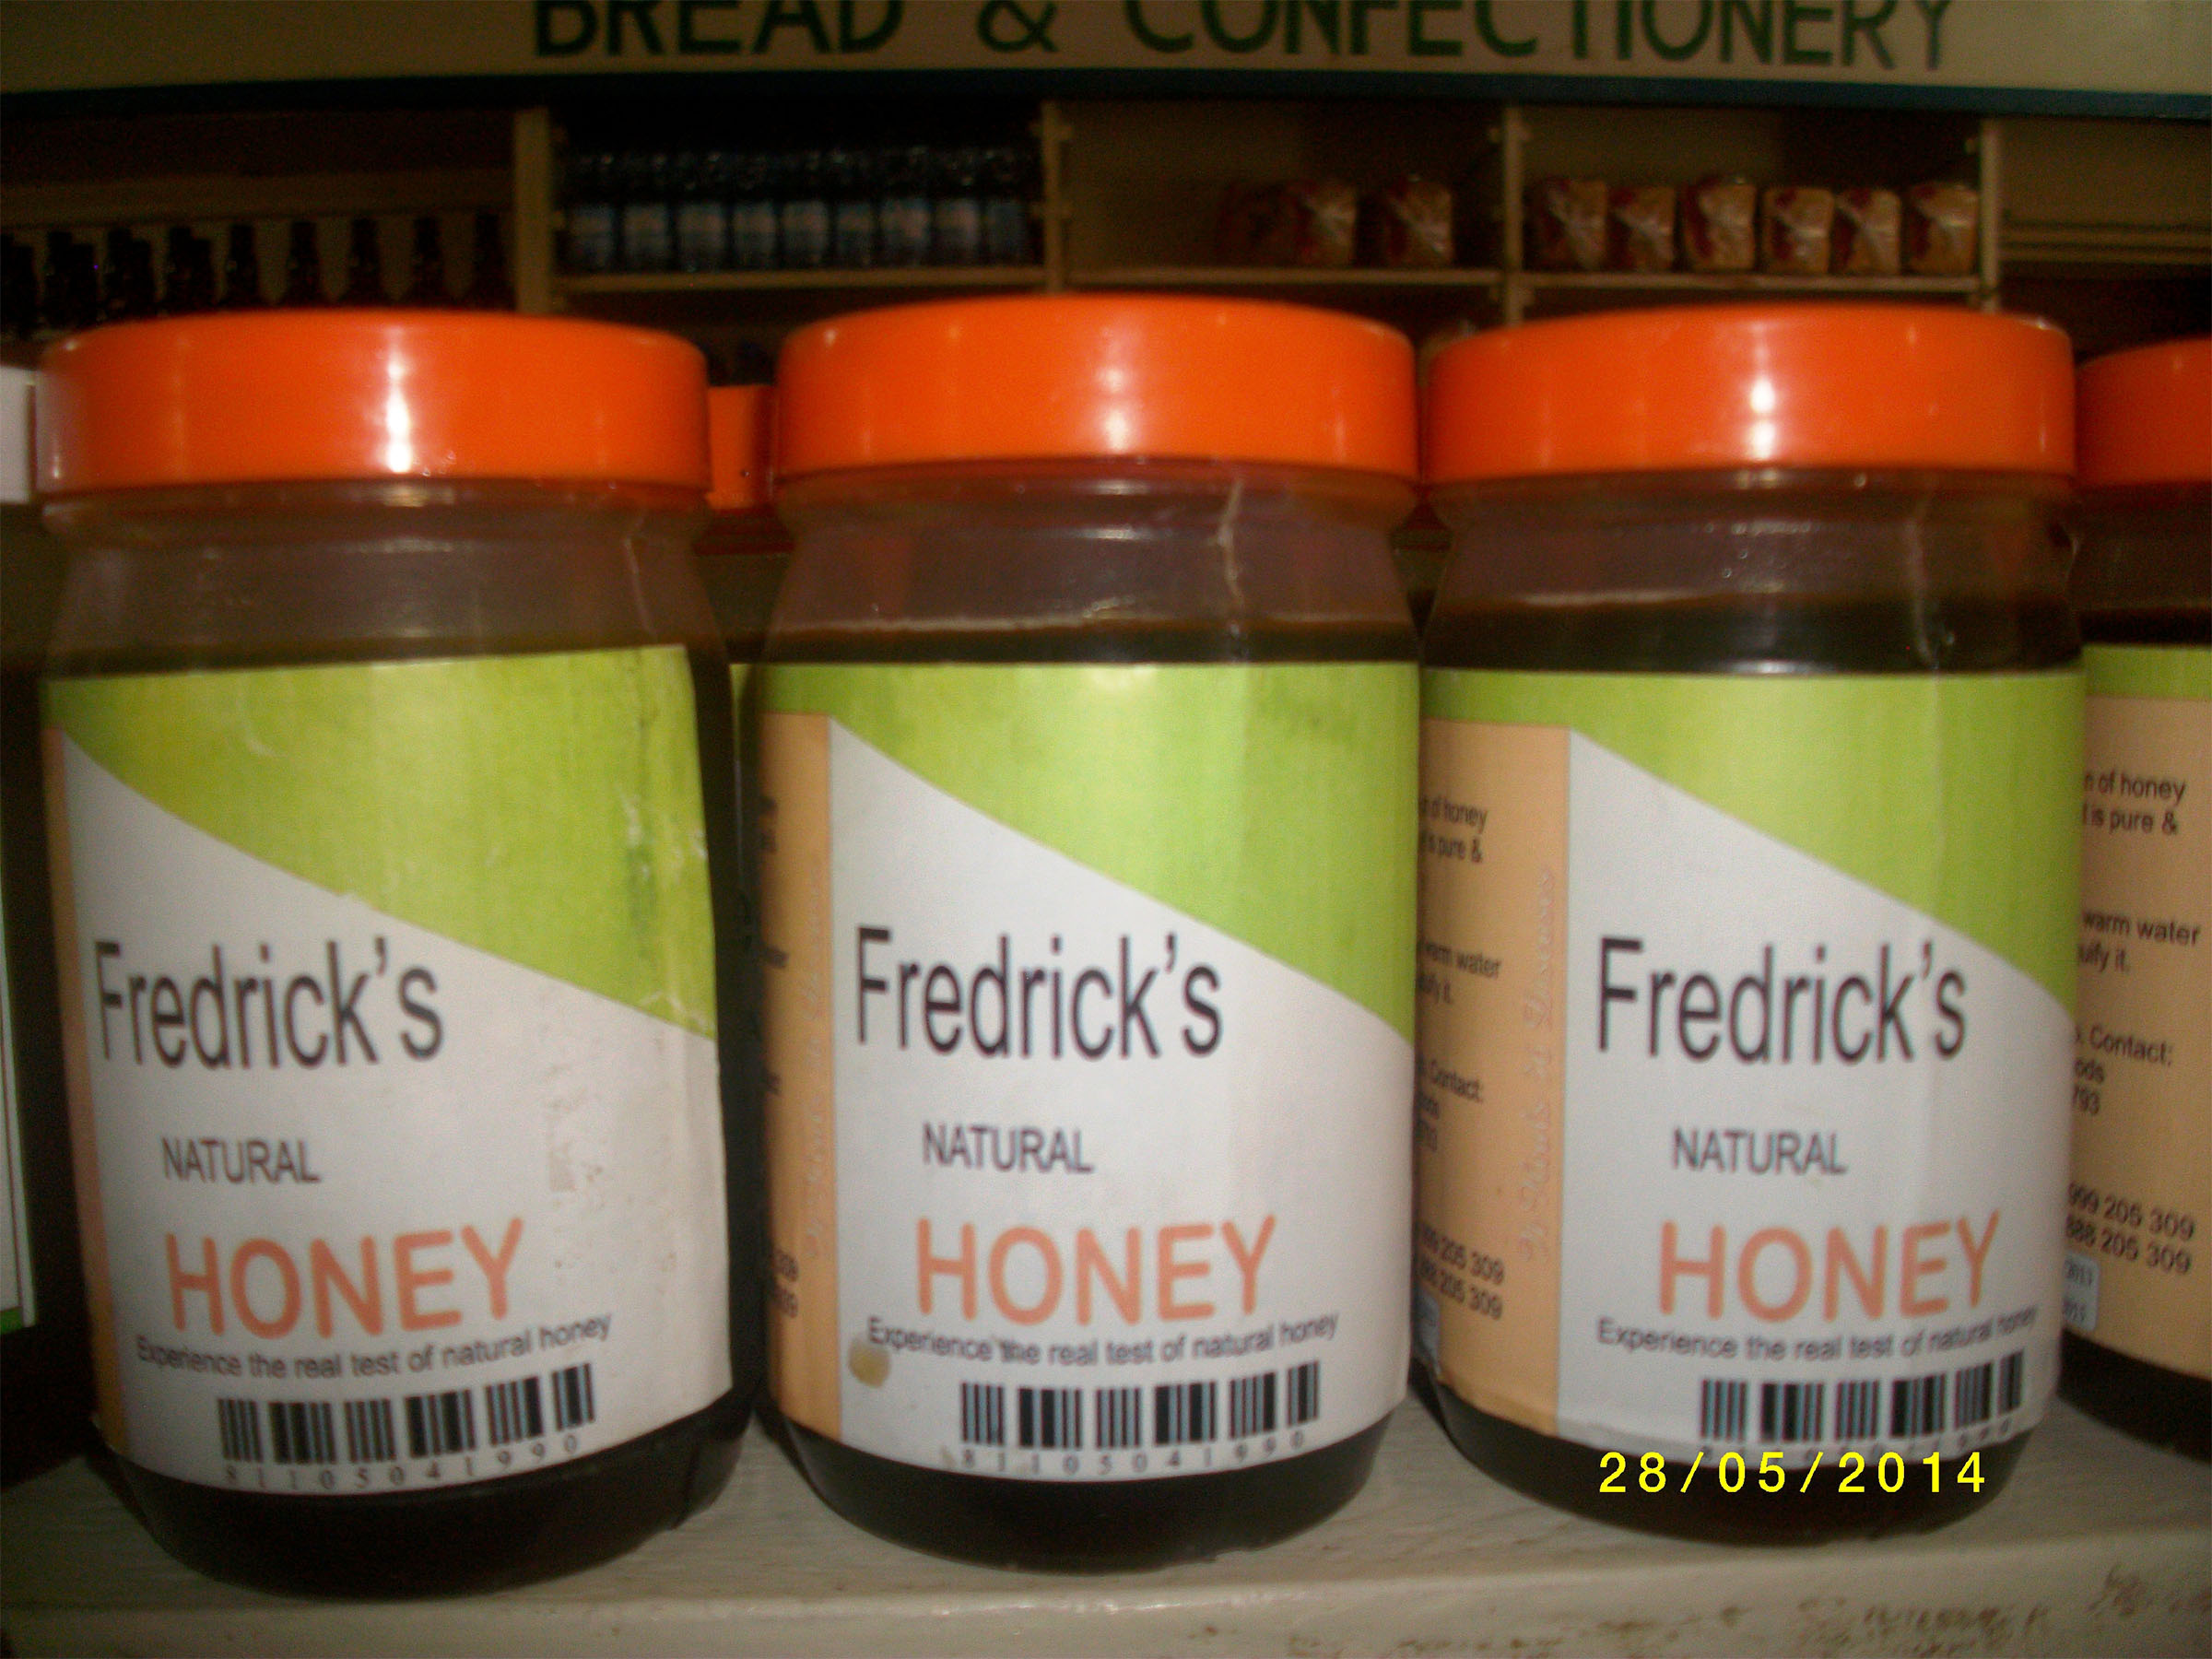 Fredricks Honey IMGP6733 edited 2400x1800